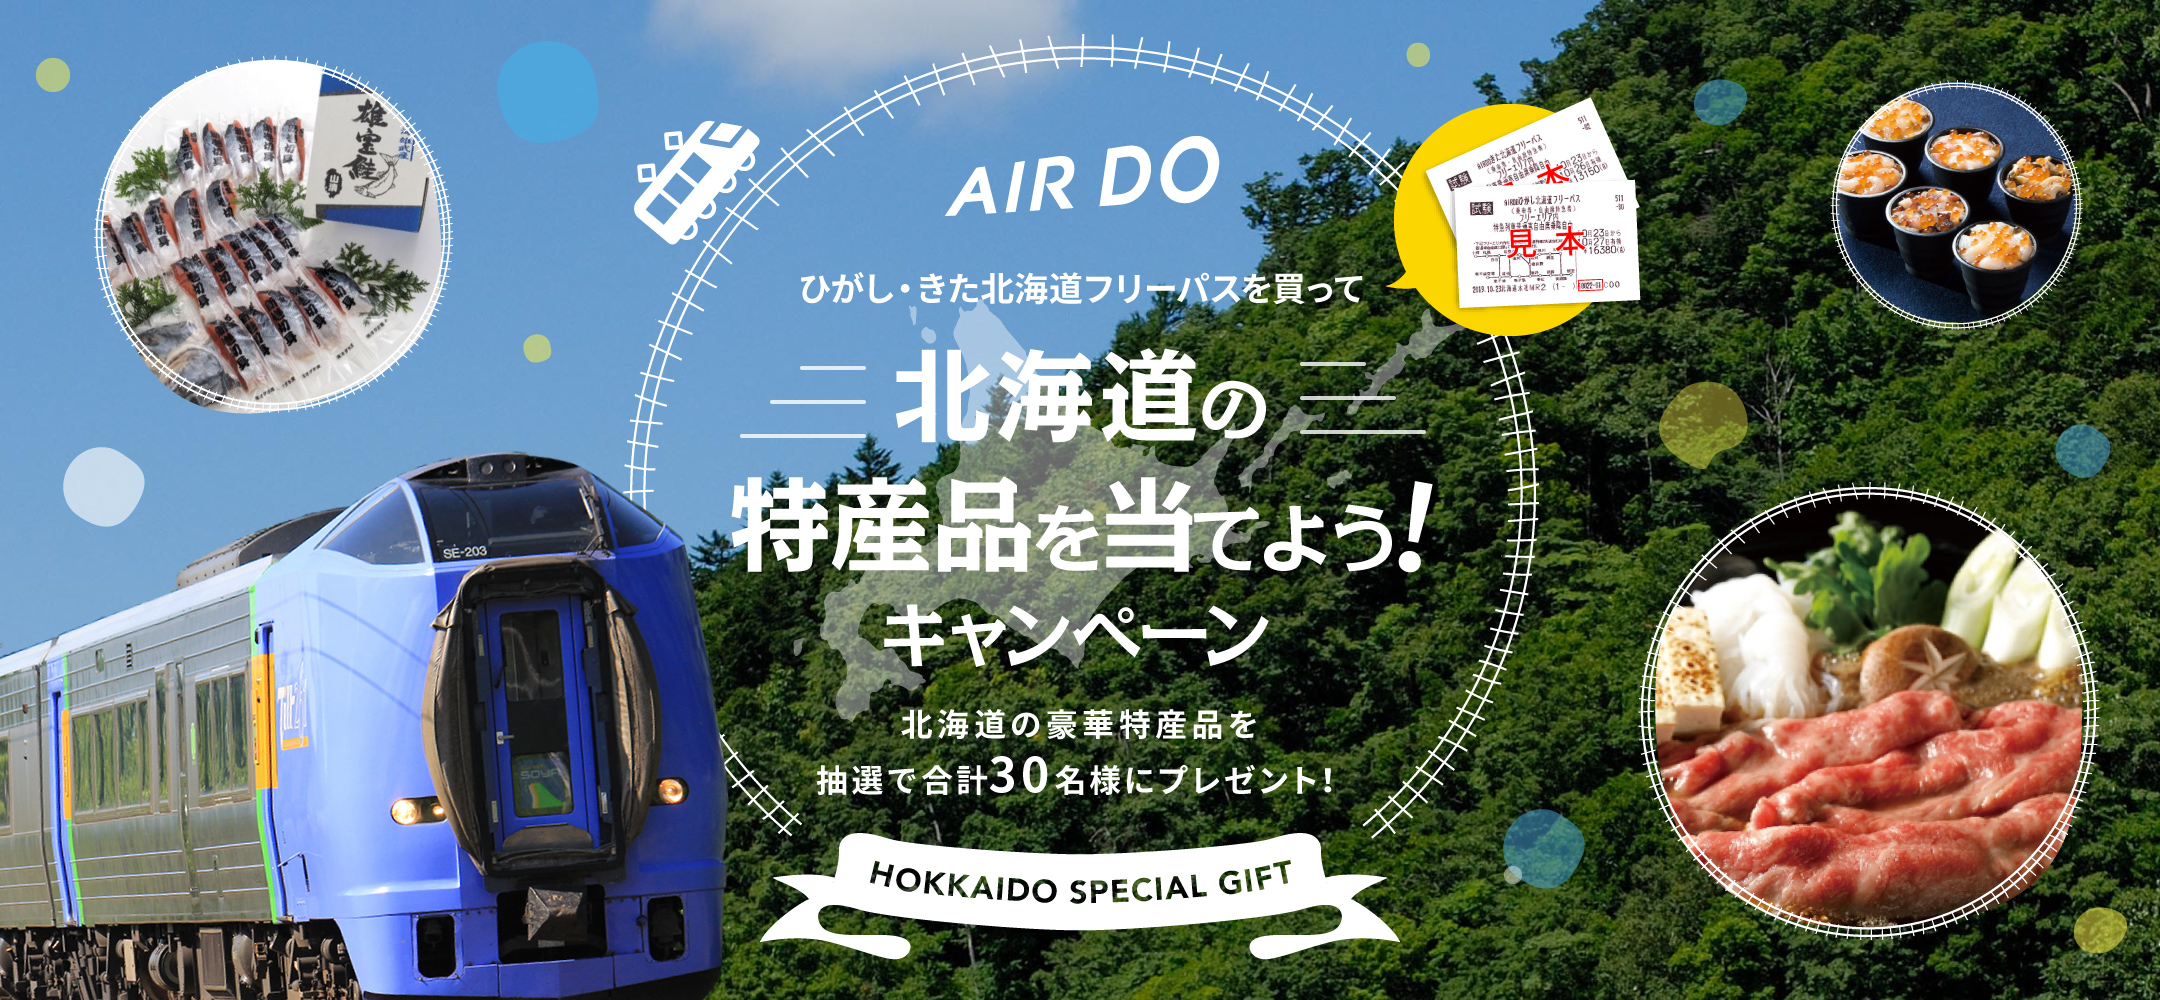 Airdoひがし きた北海道フリーパスを買って北海道の特産品を当てよう キャンペーン キャンペーン 北海道発着の飛行機予約 空席照会 Airdo エア ドゥ